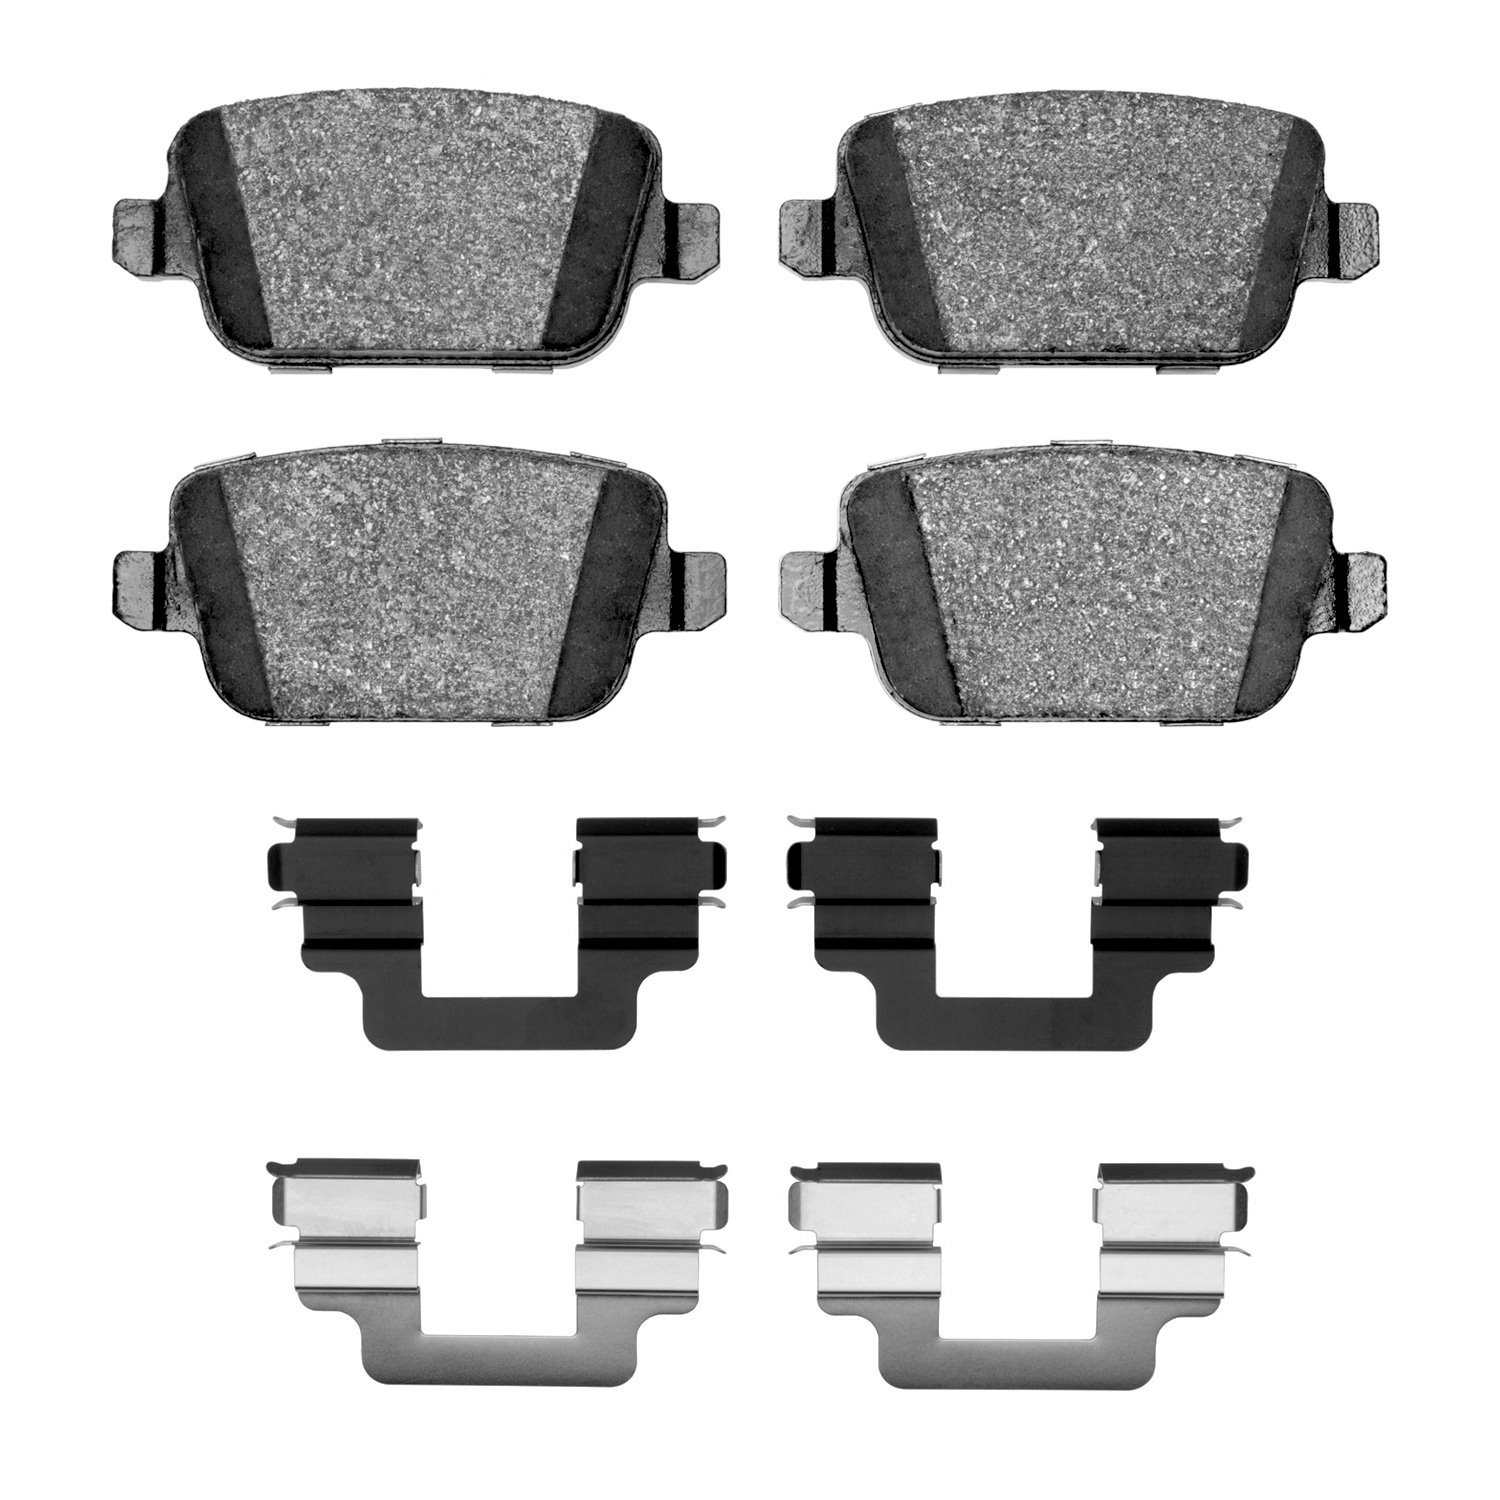 1600-1314-02 5000 Euro Ceramic Brake Pads & Hardware Kit, 2008-2012 Land Rover, Position: Rear